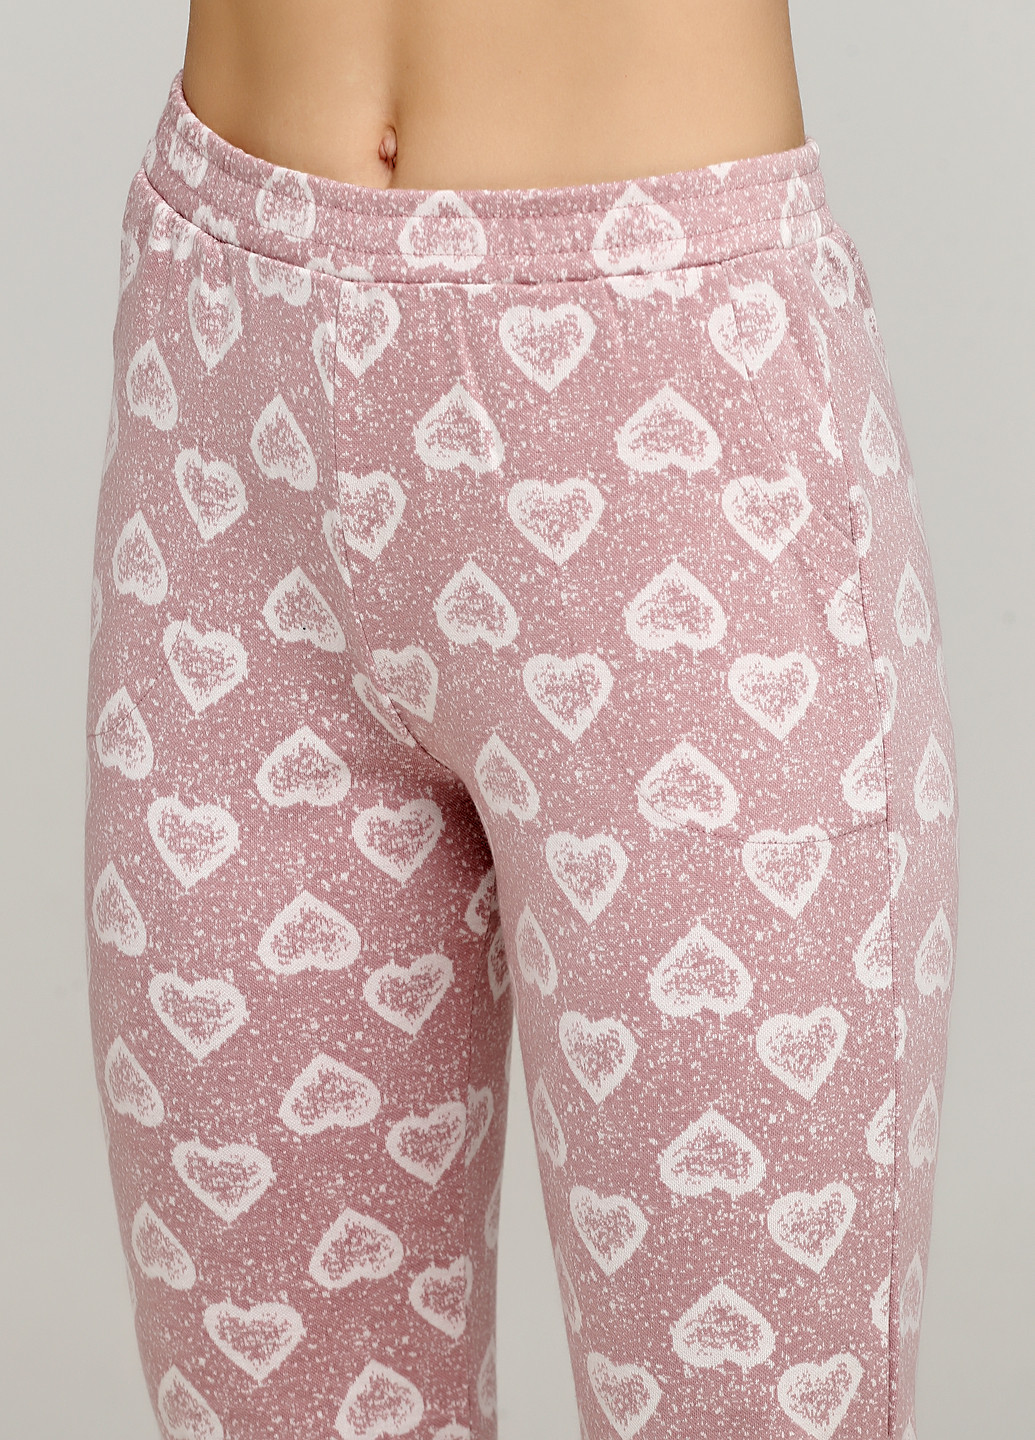 Розовый демисезонный комплект (свитшот, брюки) Cotpark